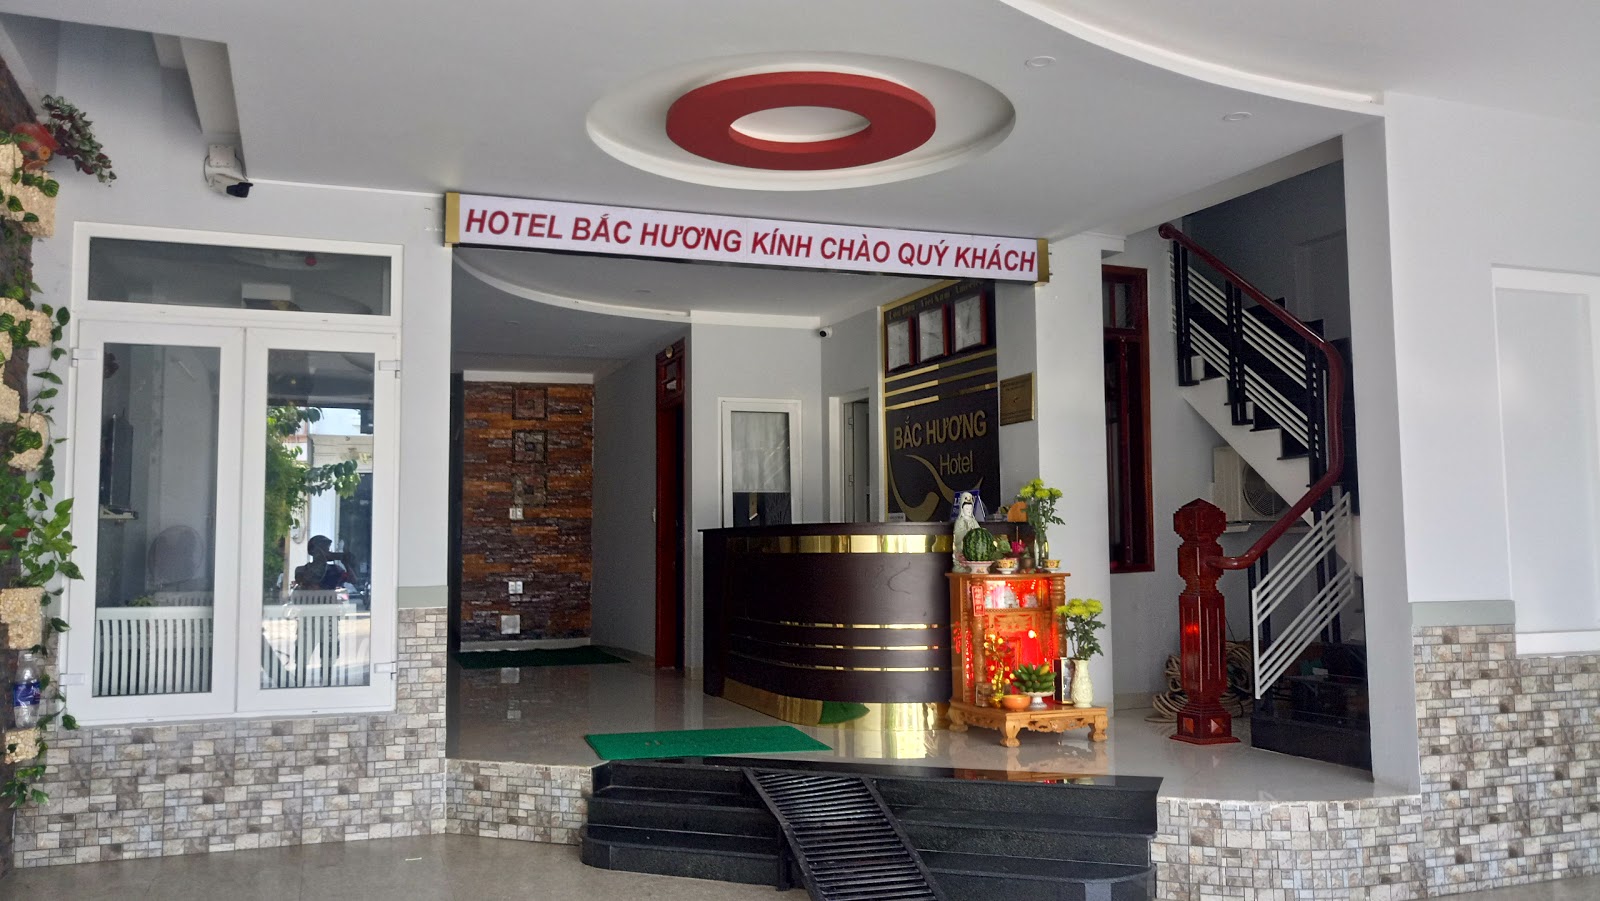 Bắc Hương hotel Kon Tum cung cấp dịch vụ tiện nghi